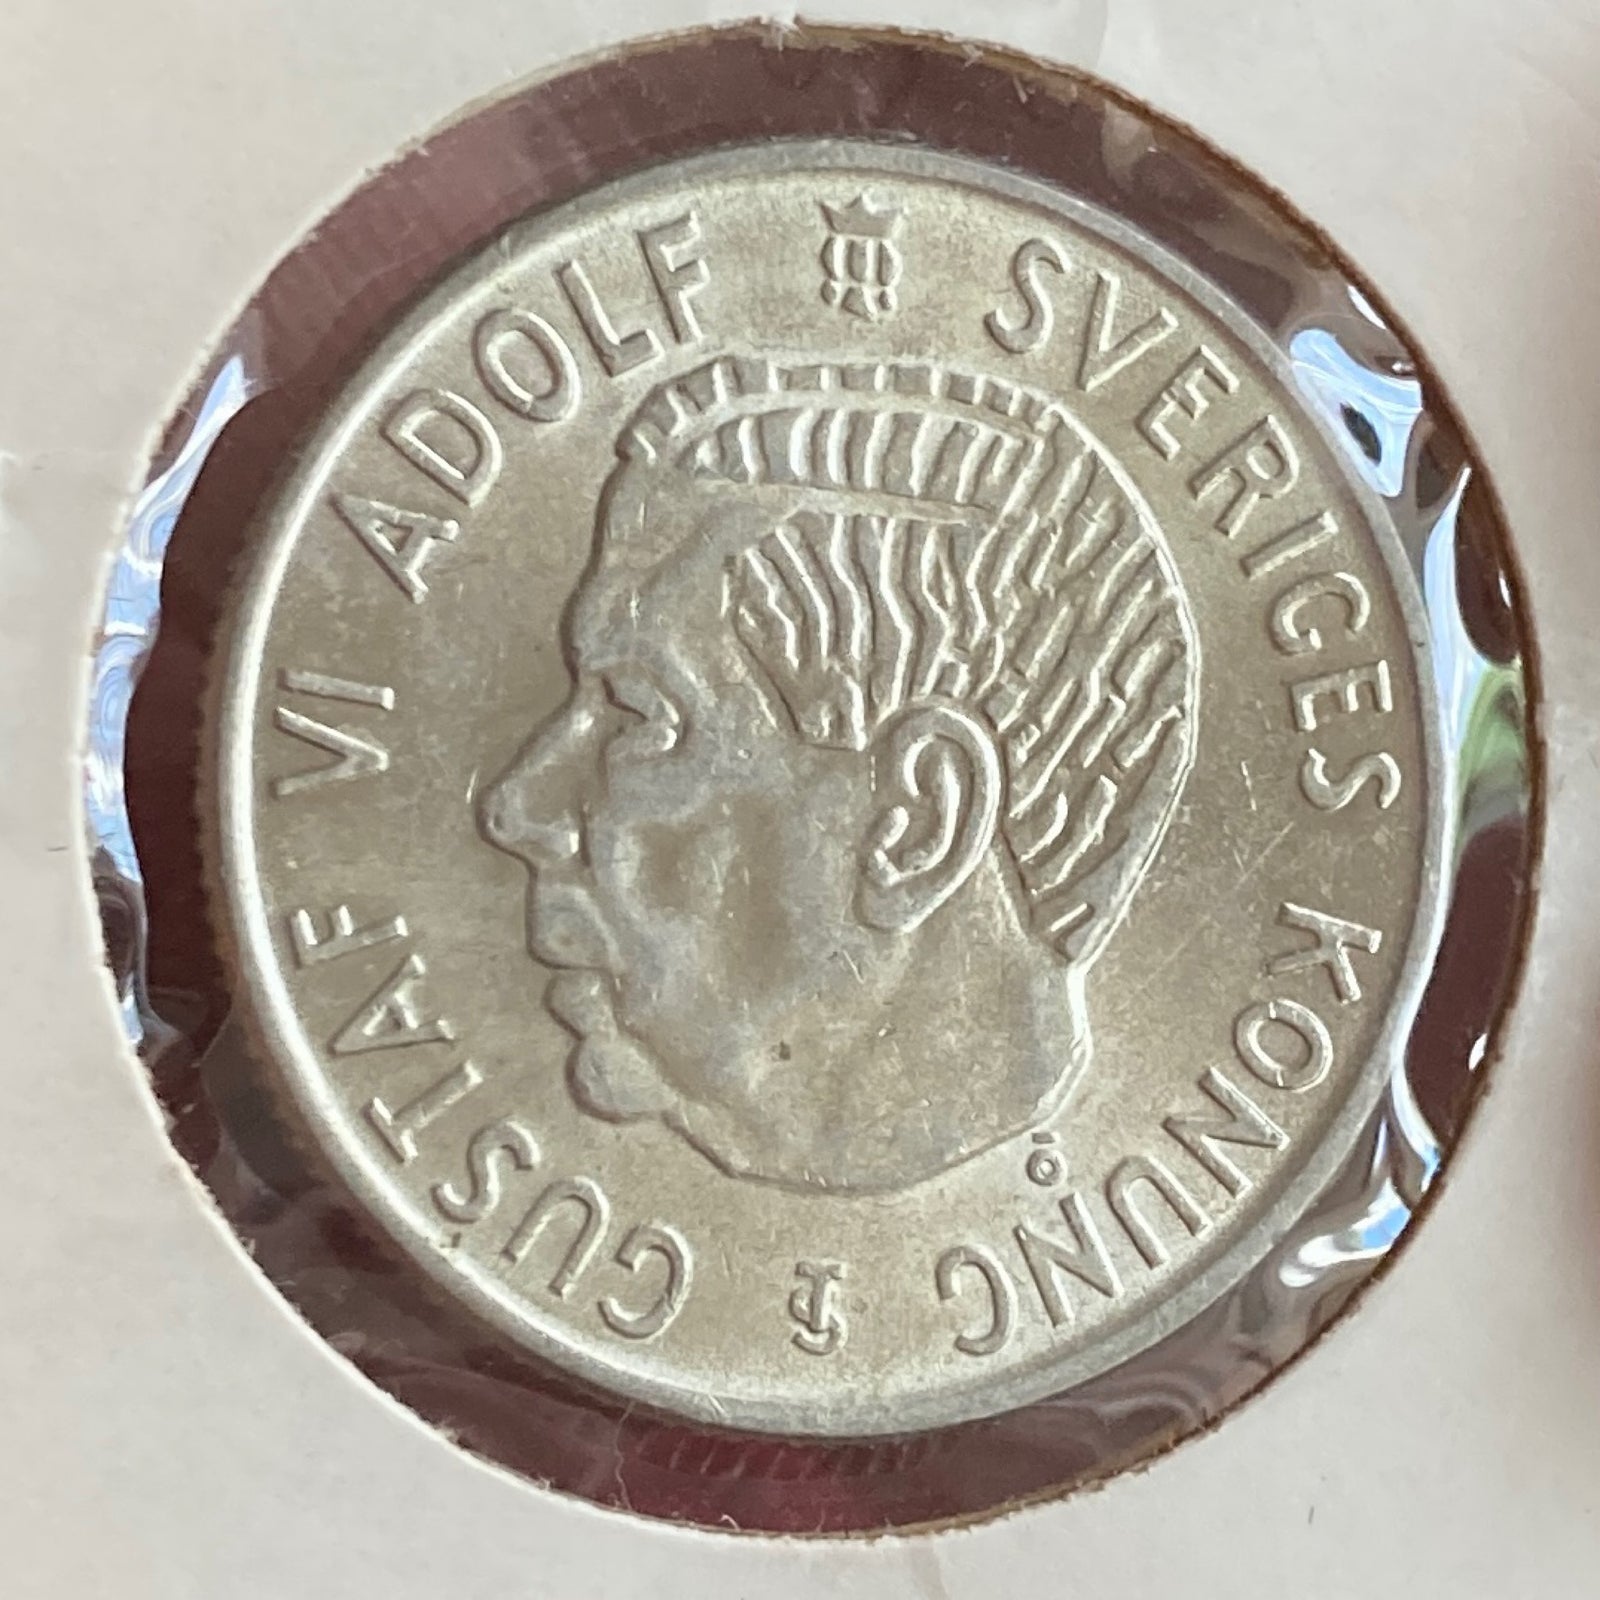 Skandinavien, mønter, 2 kr